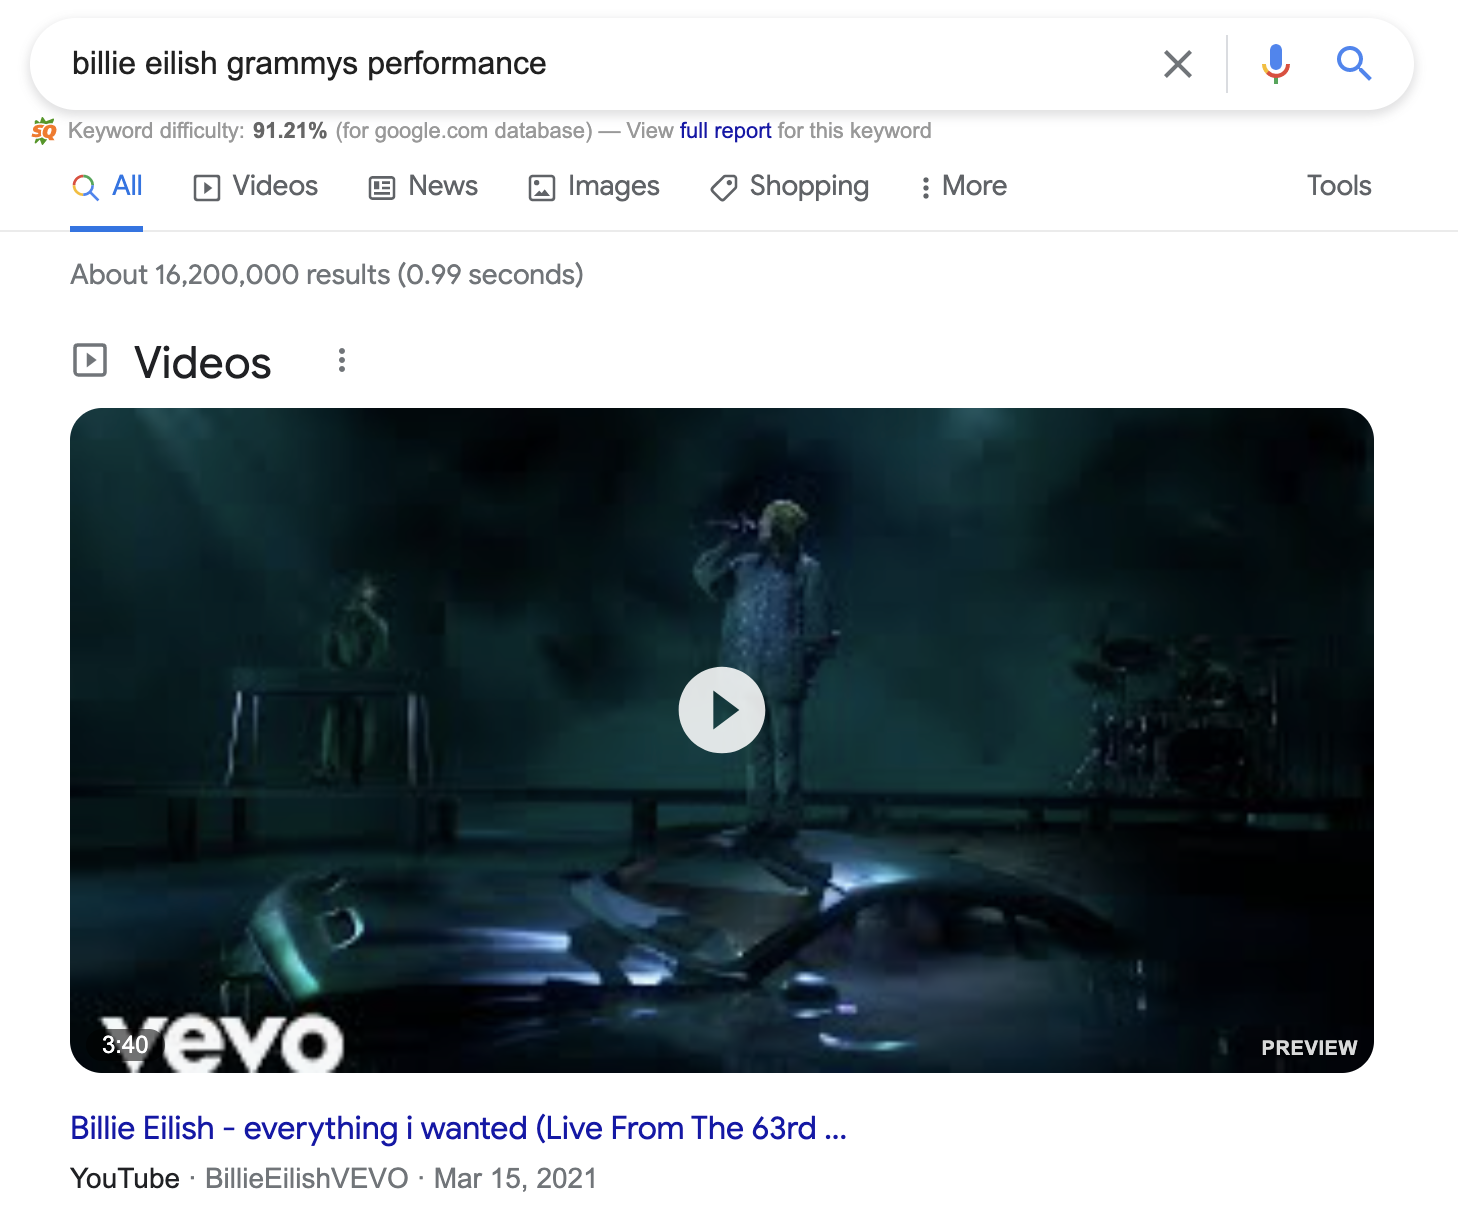 Billie Eillish Grammy's performance video rich snippet